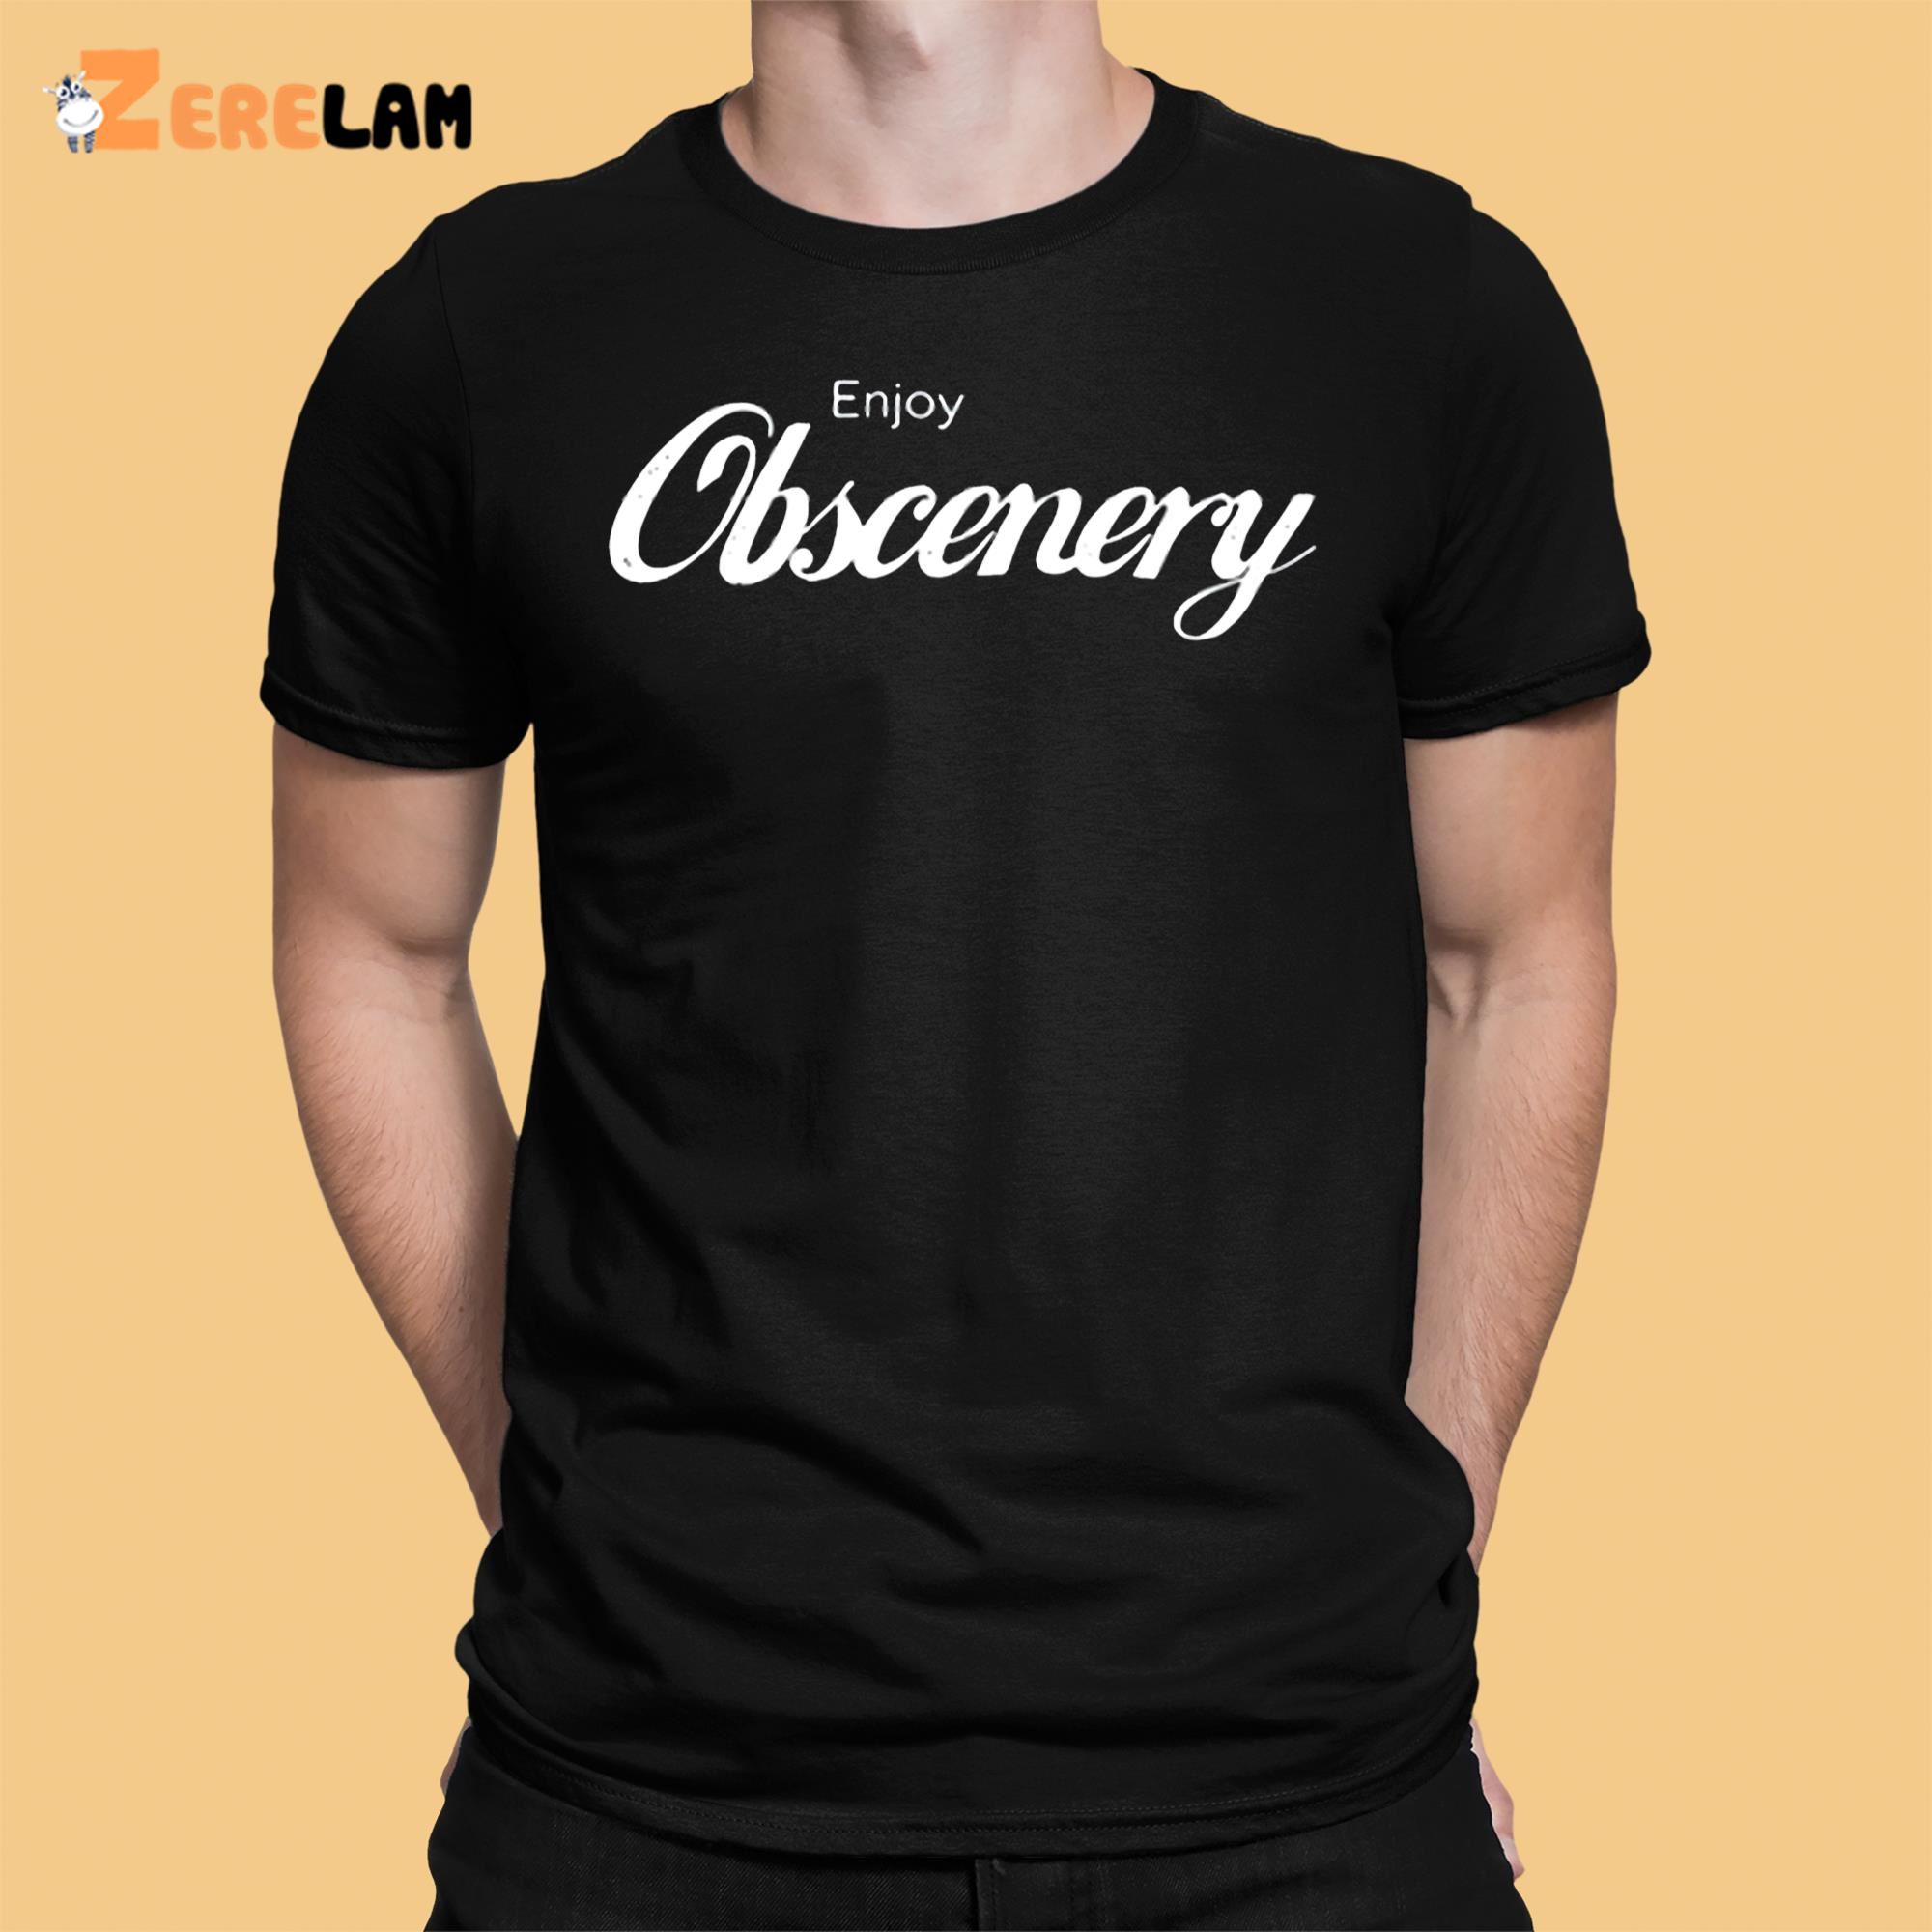 Qotsa Enjoy Obscenery Shirt 1 1